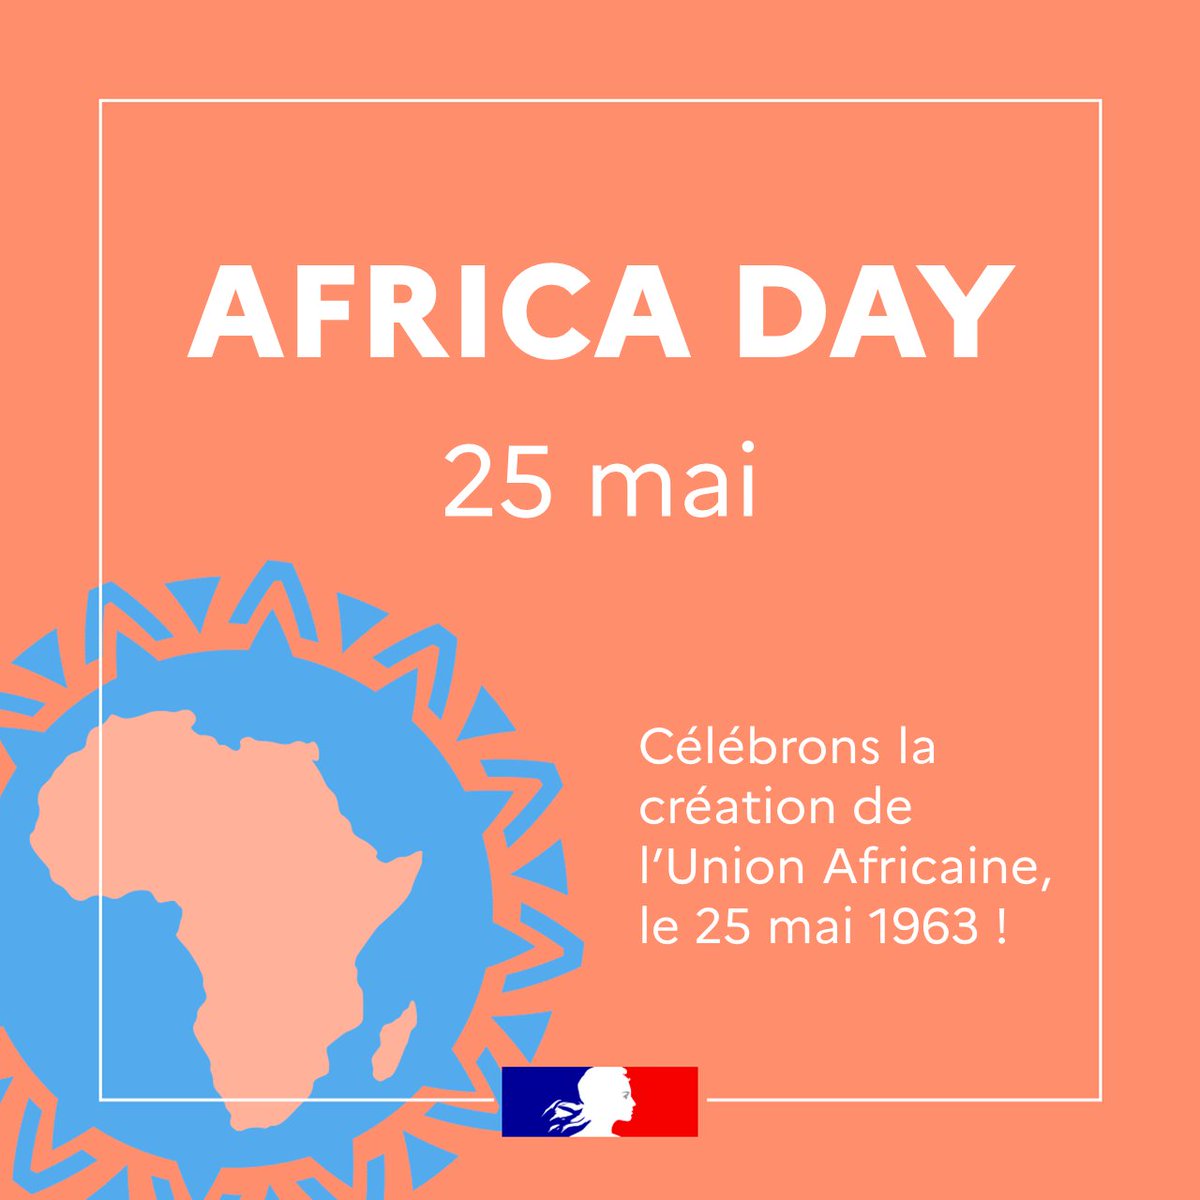 La France 🇫🇷 adresse ses meilleurs vœux à l'@_AfricanUnion et à ses États membres à l'occasion du 61ème anniversaire de la création de l’OUA, devenue UA. Nous soutenons pleinement son projet d’intégration et partageons son ambition de paix et de prospérité. #AfricaDay